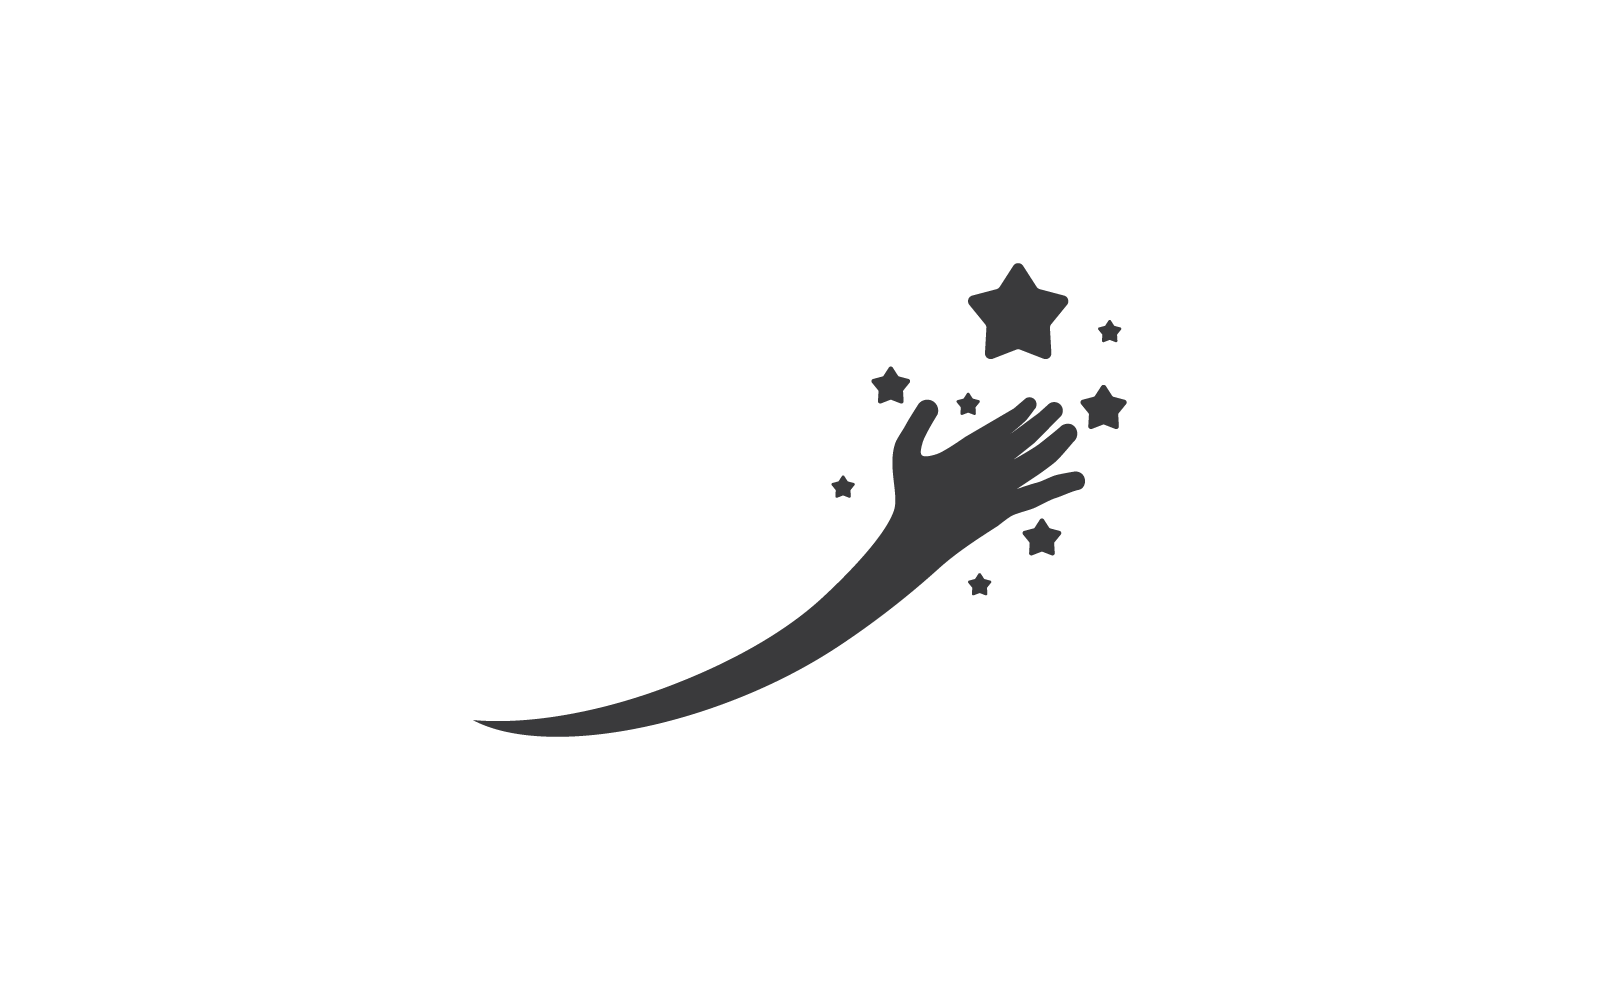 Dreams star logo illustration vector design